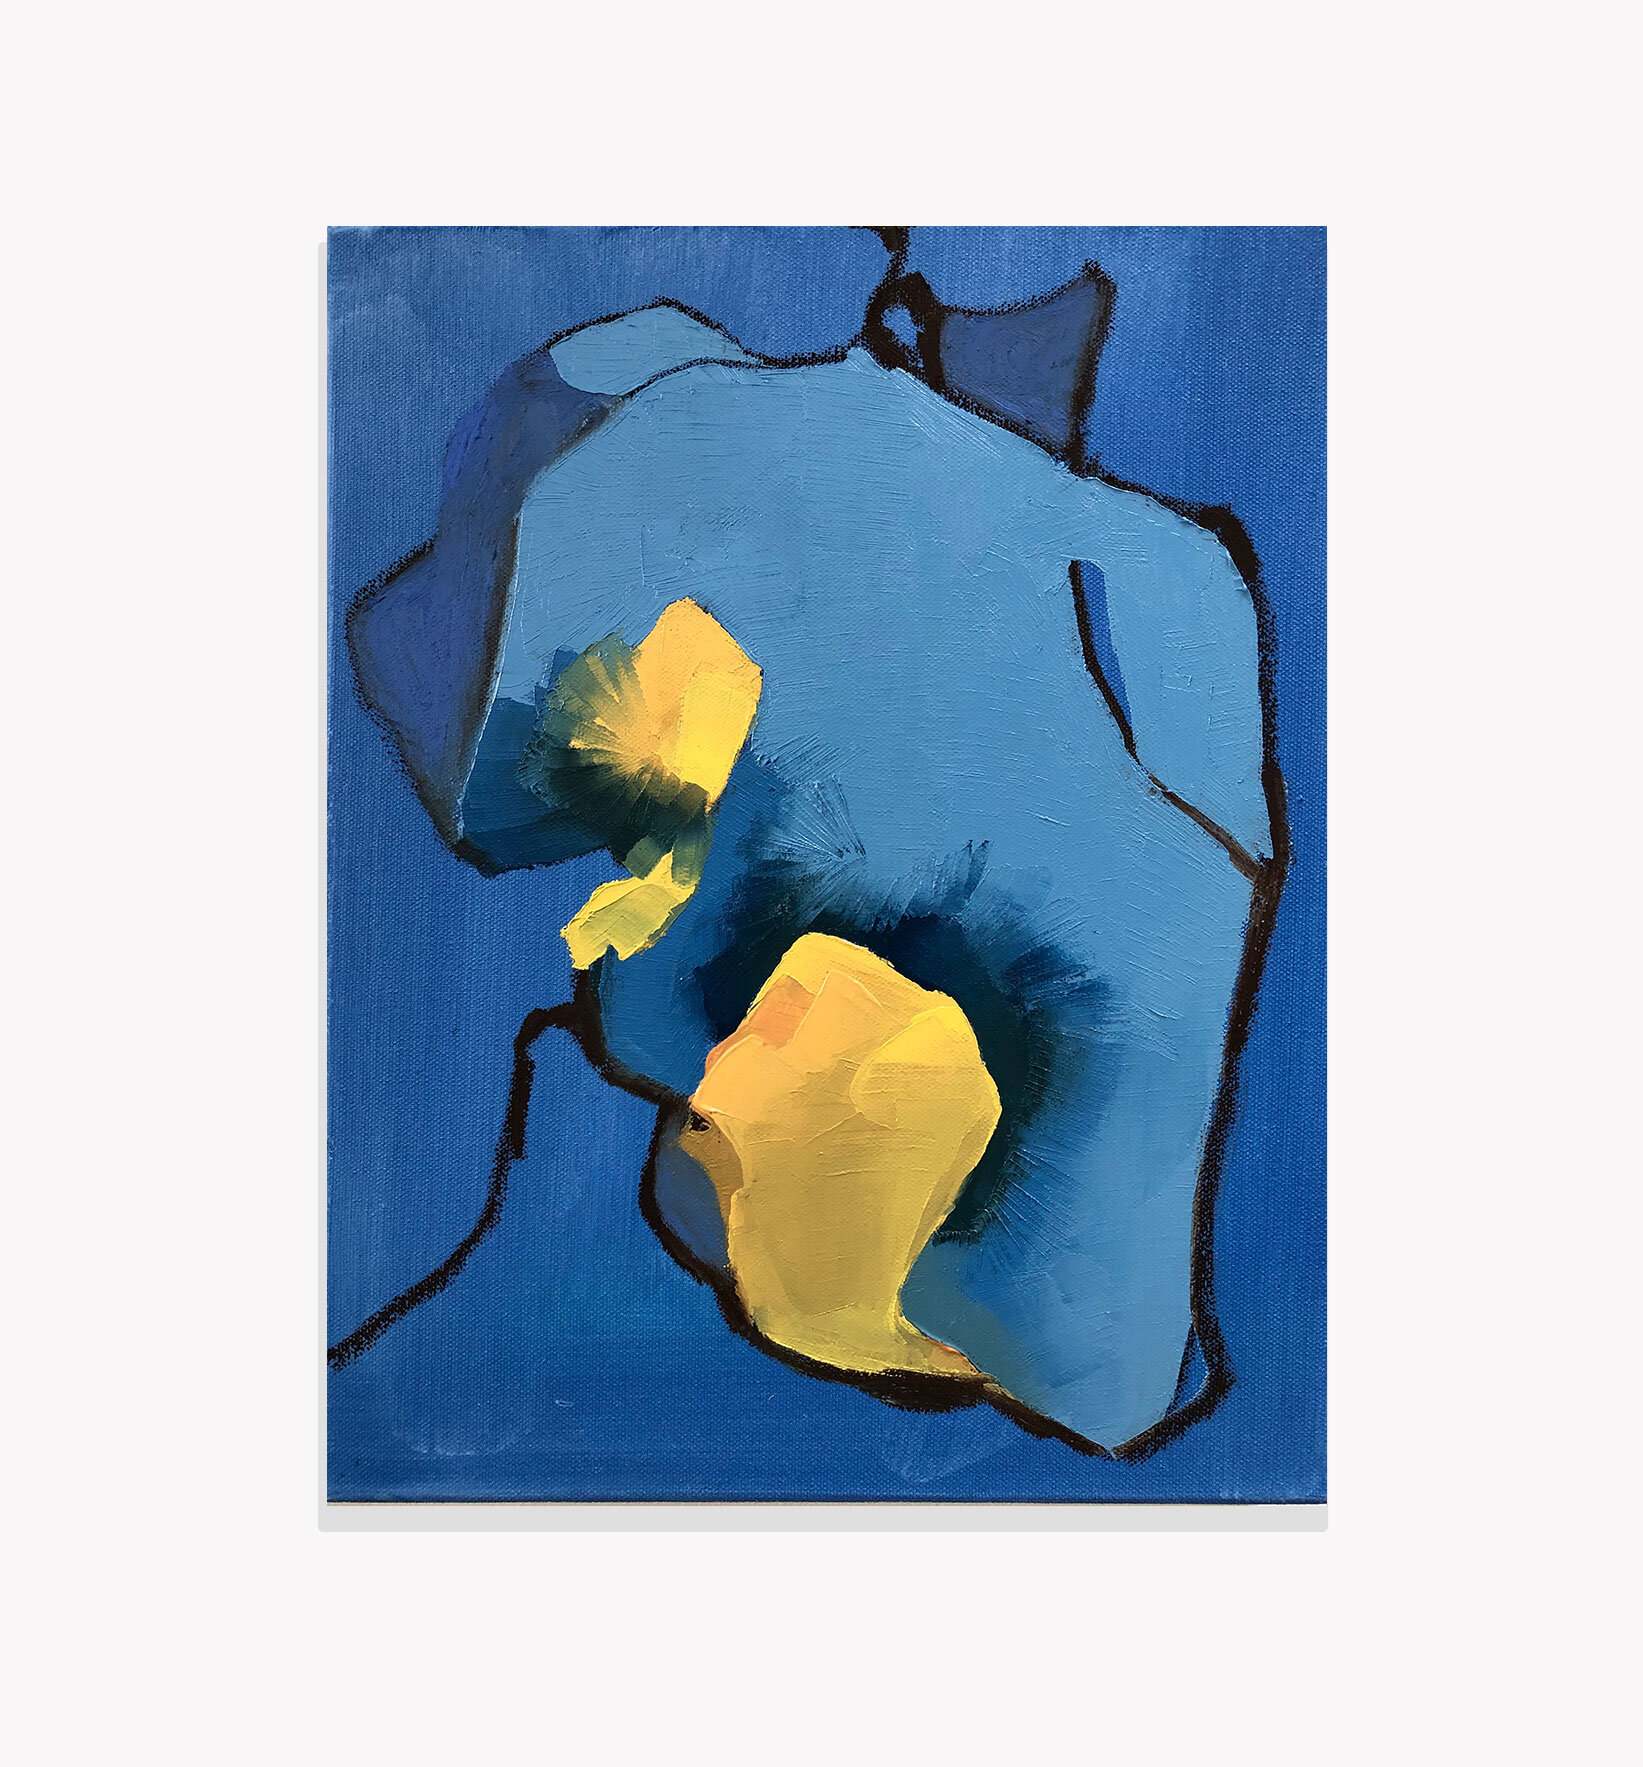   Eleven , Kristi Head 2019. Oil on canvas, 14 x 1 1 inches. 